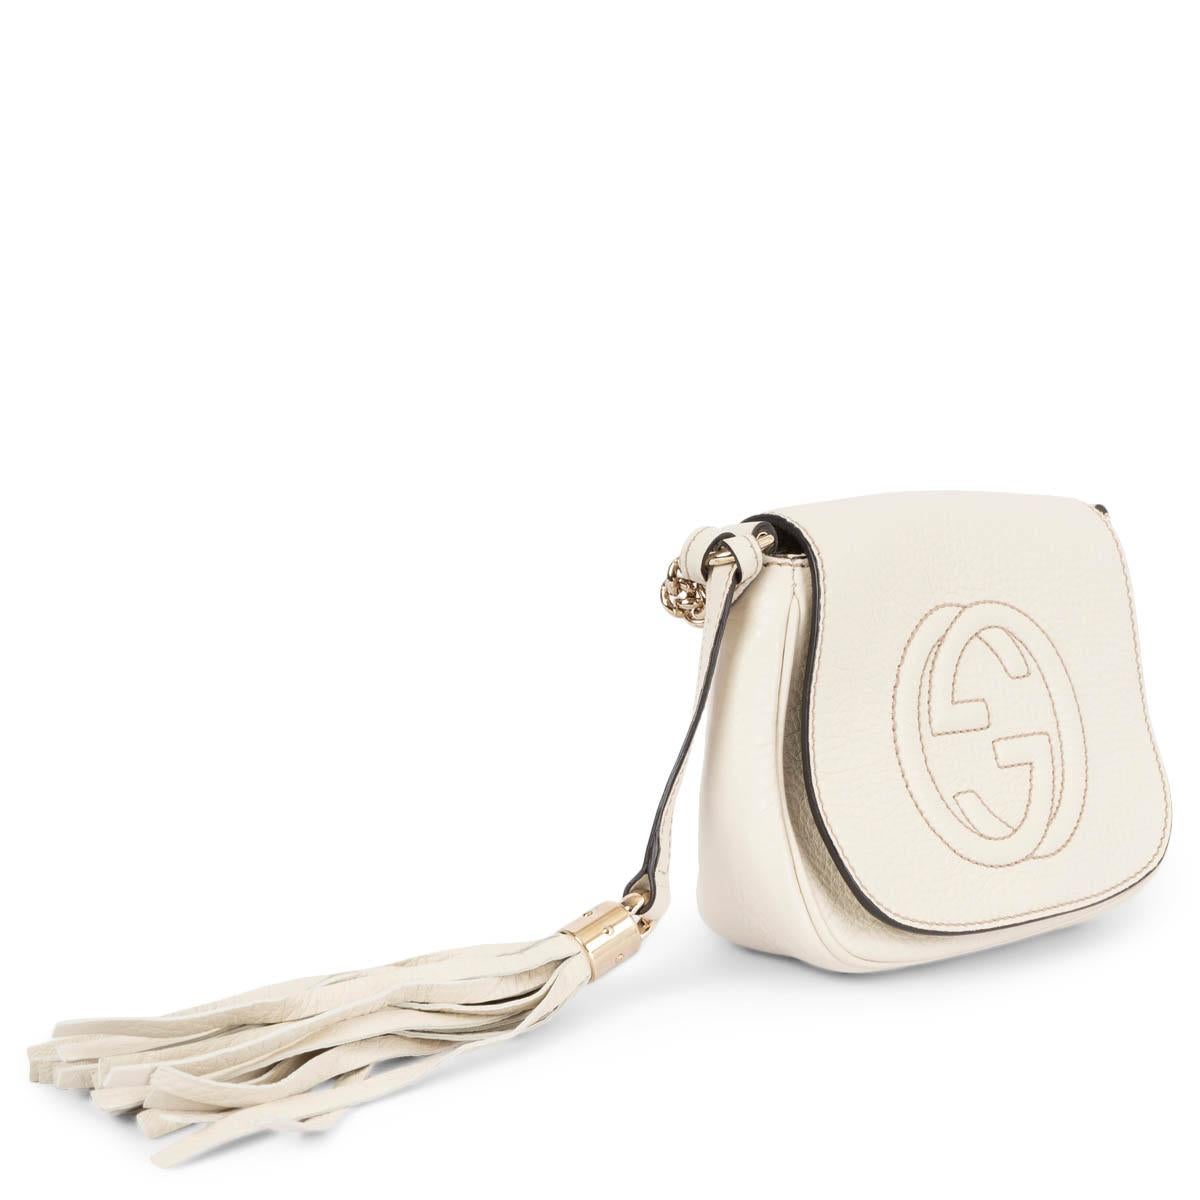 100% authentische Gucci Small SOHO flap Crossbody Bag aus elfenbeinfarbenem, gepfeffertem Kalbsleder. Mit einem geprägten GG Logo auf der Vorderseite, einer Quaste und einer leichten goldfarbenen Kette. Sie wird mit einem Magnetknopf unter der